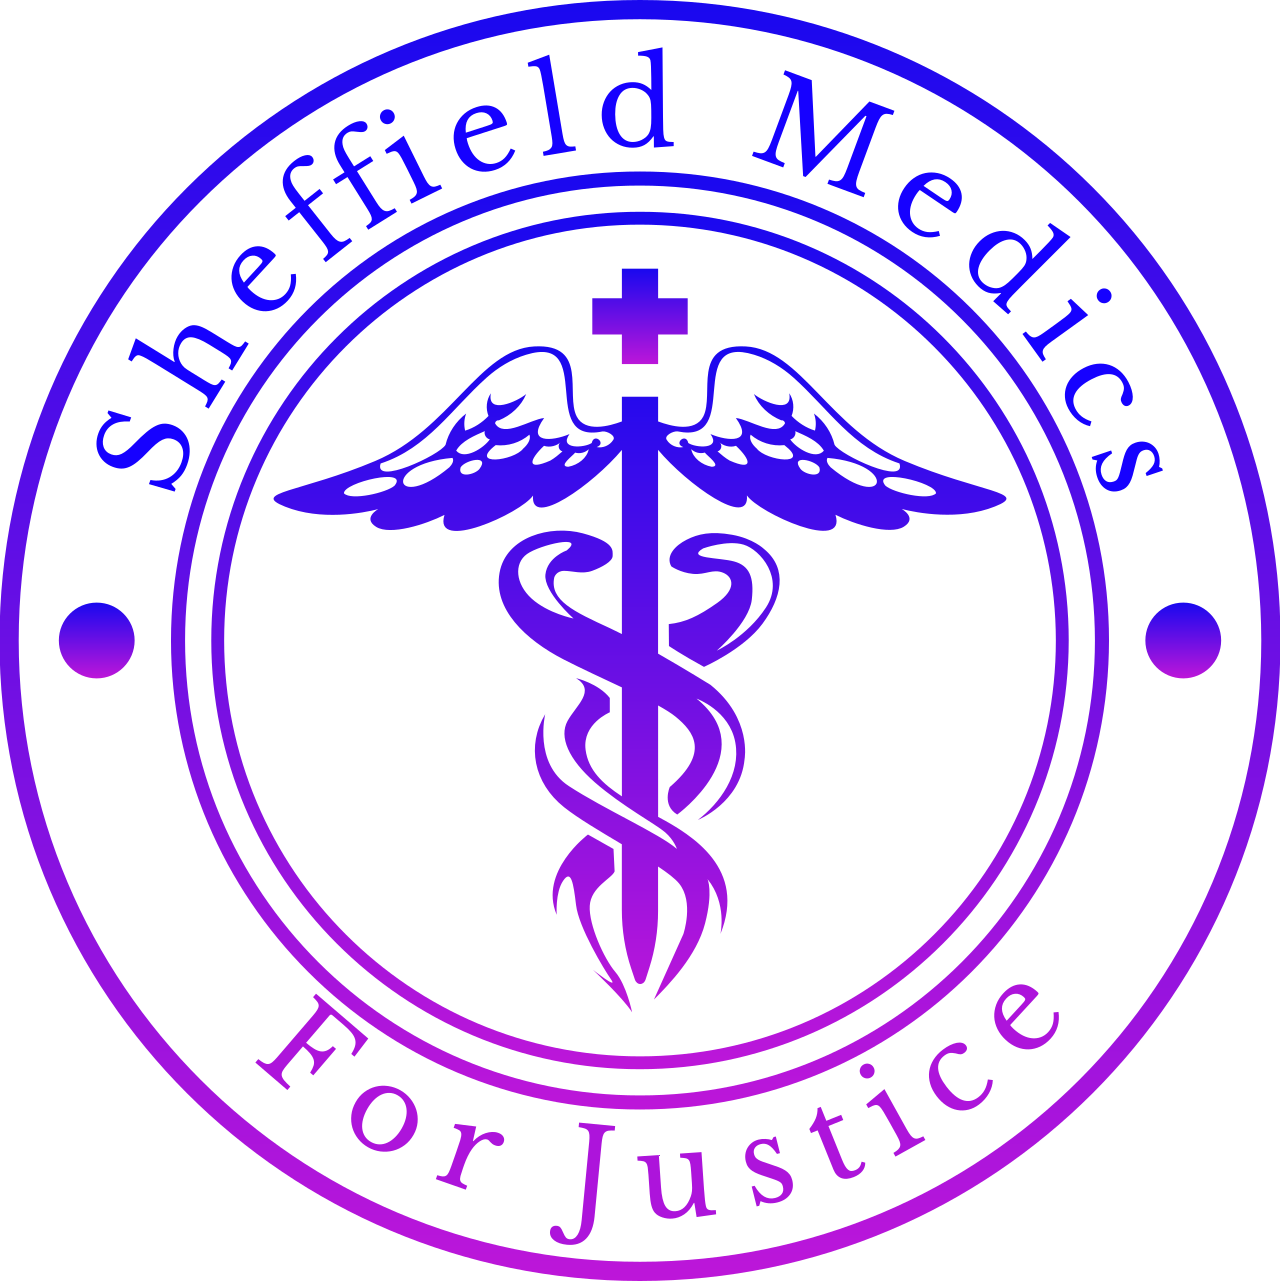  Sheffield Medics 's logo